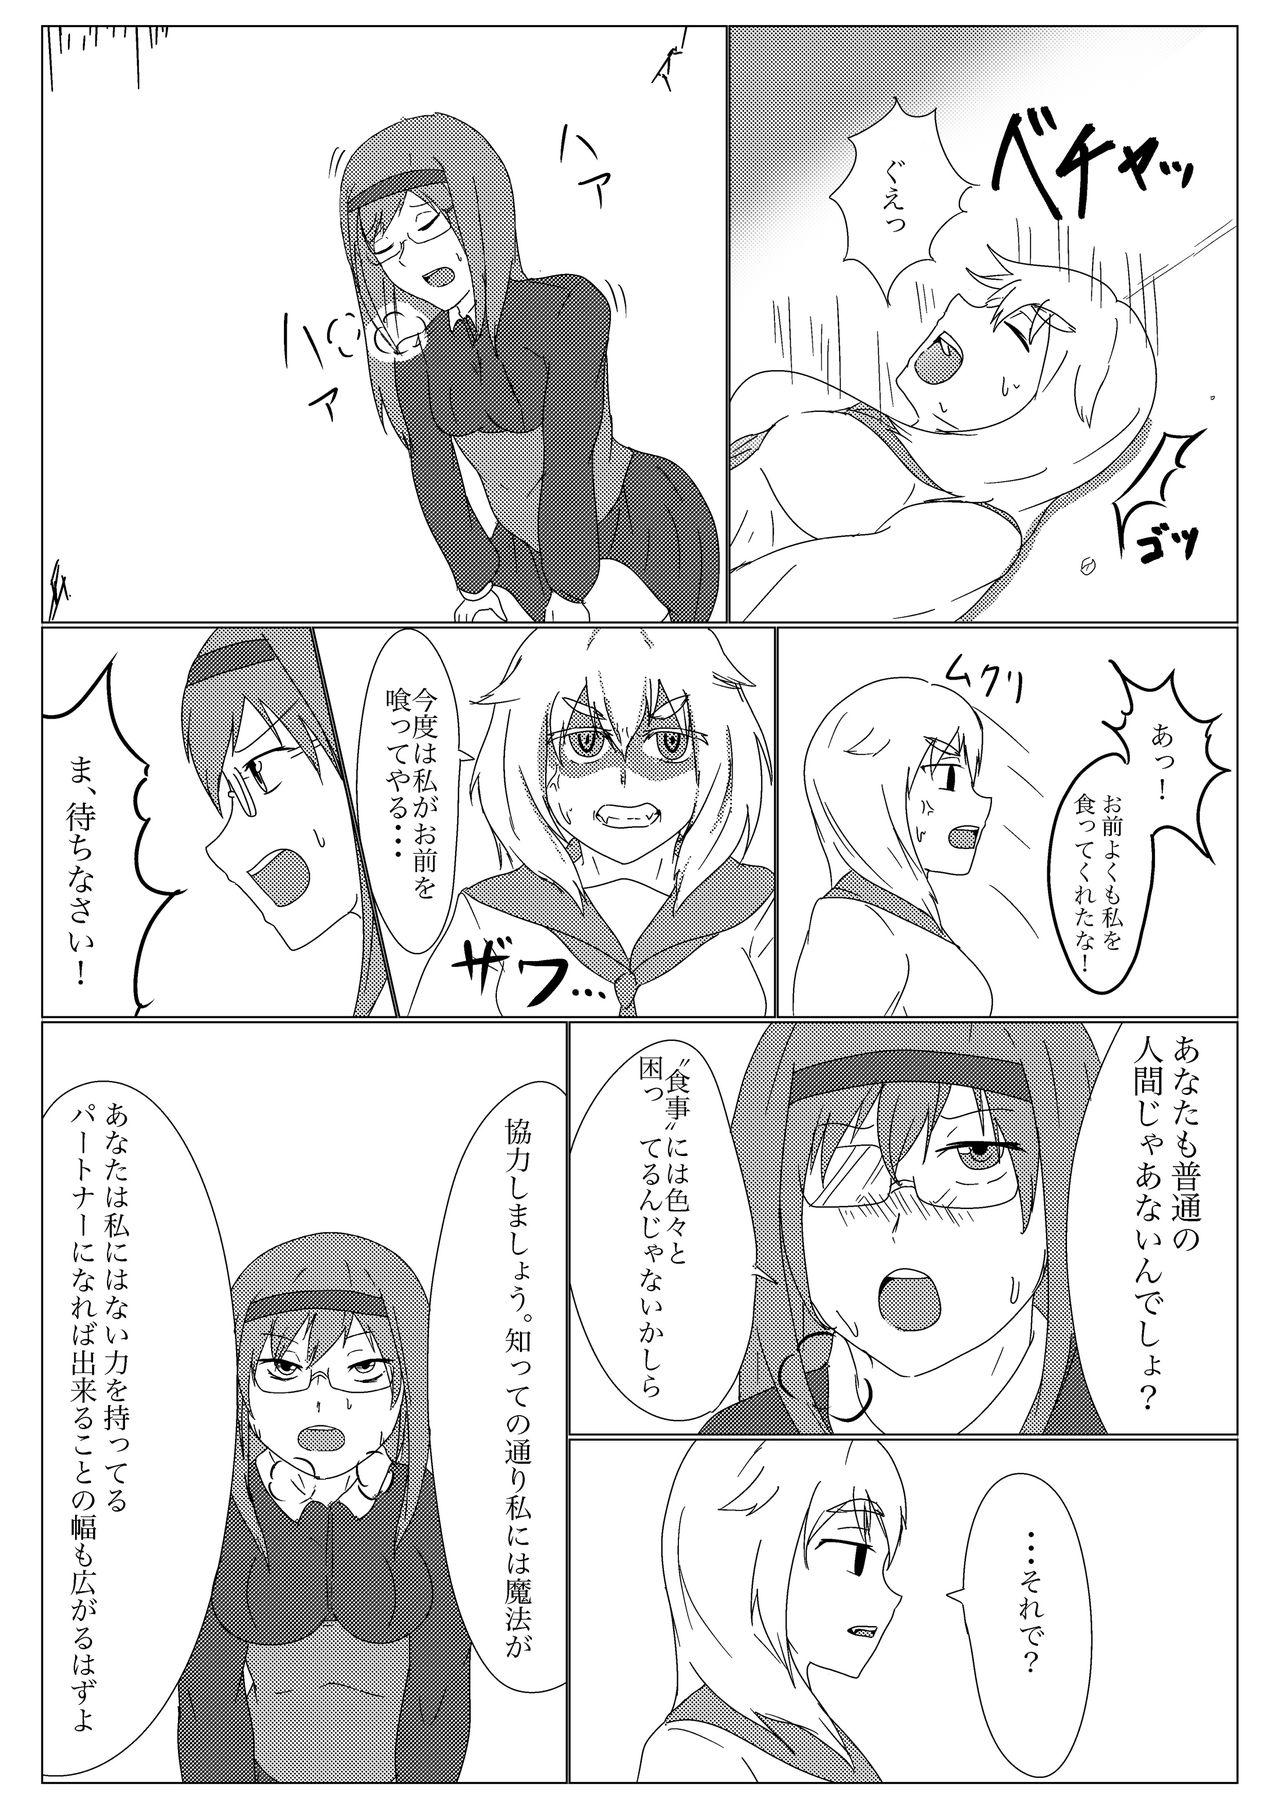 Fist Uchi no ko no deai - Original Namorada - Page 7